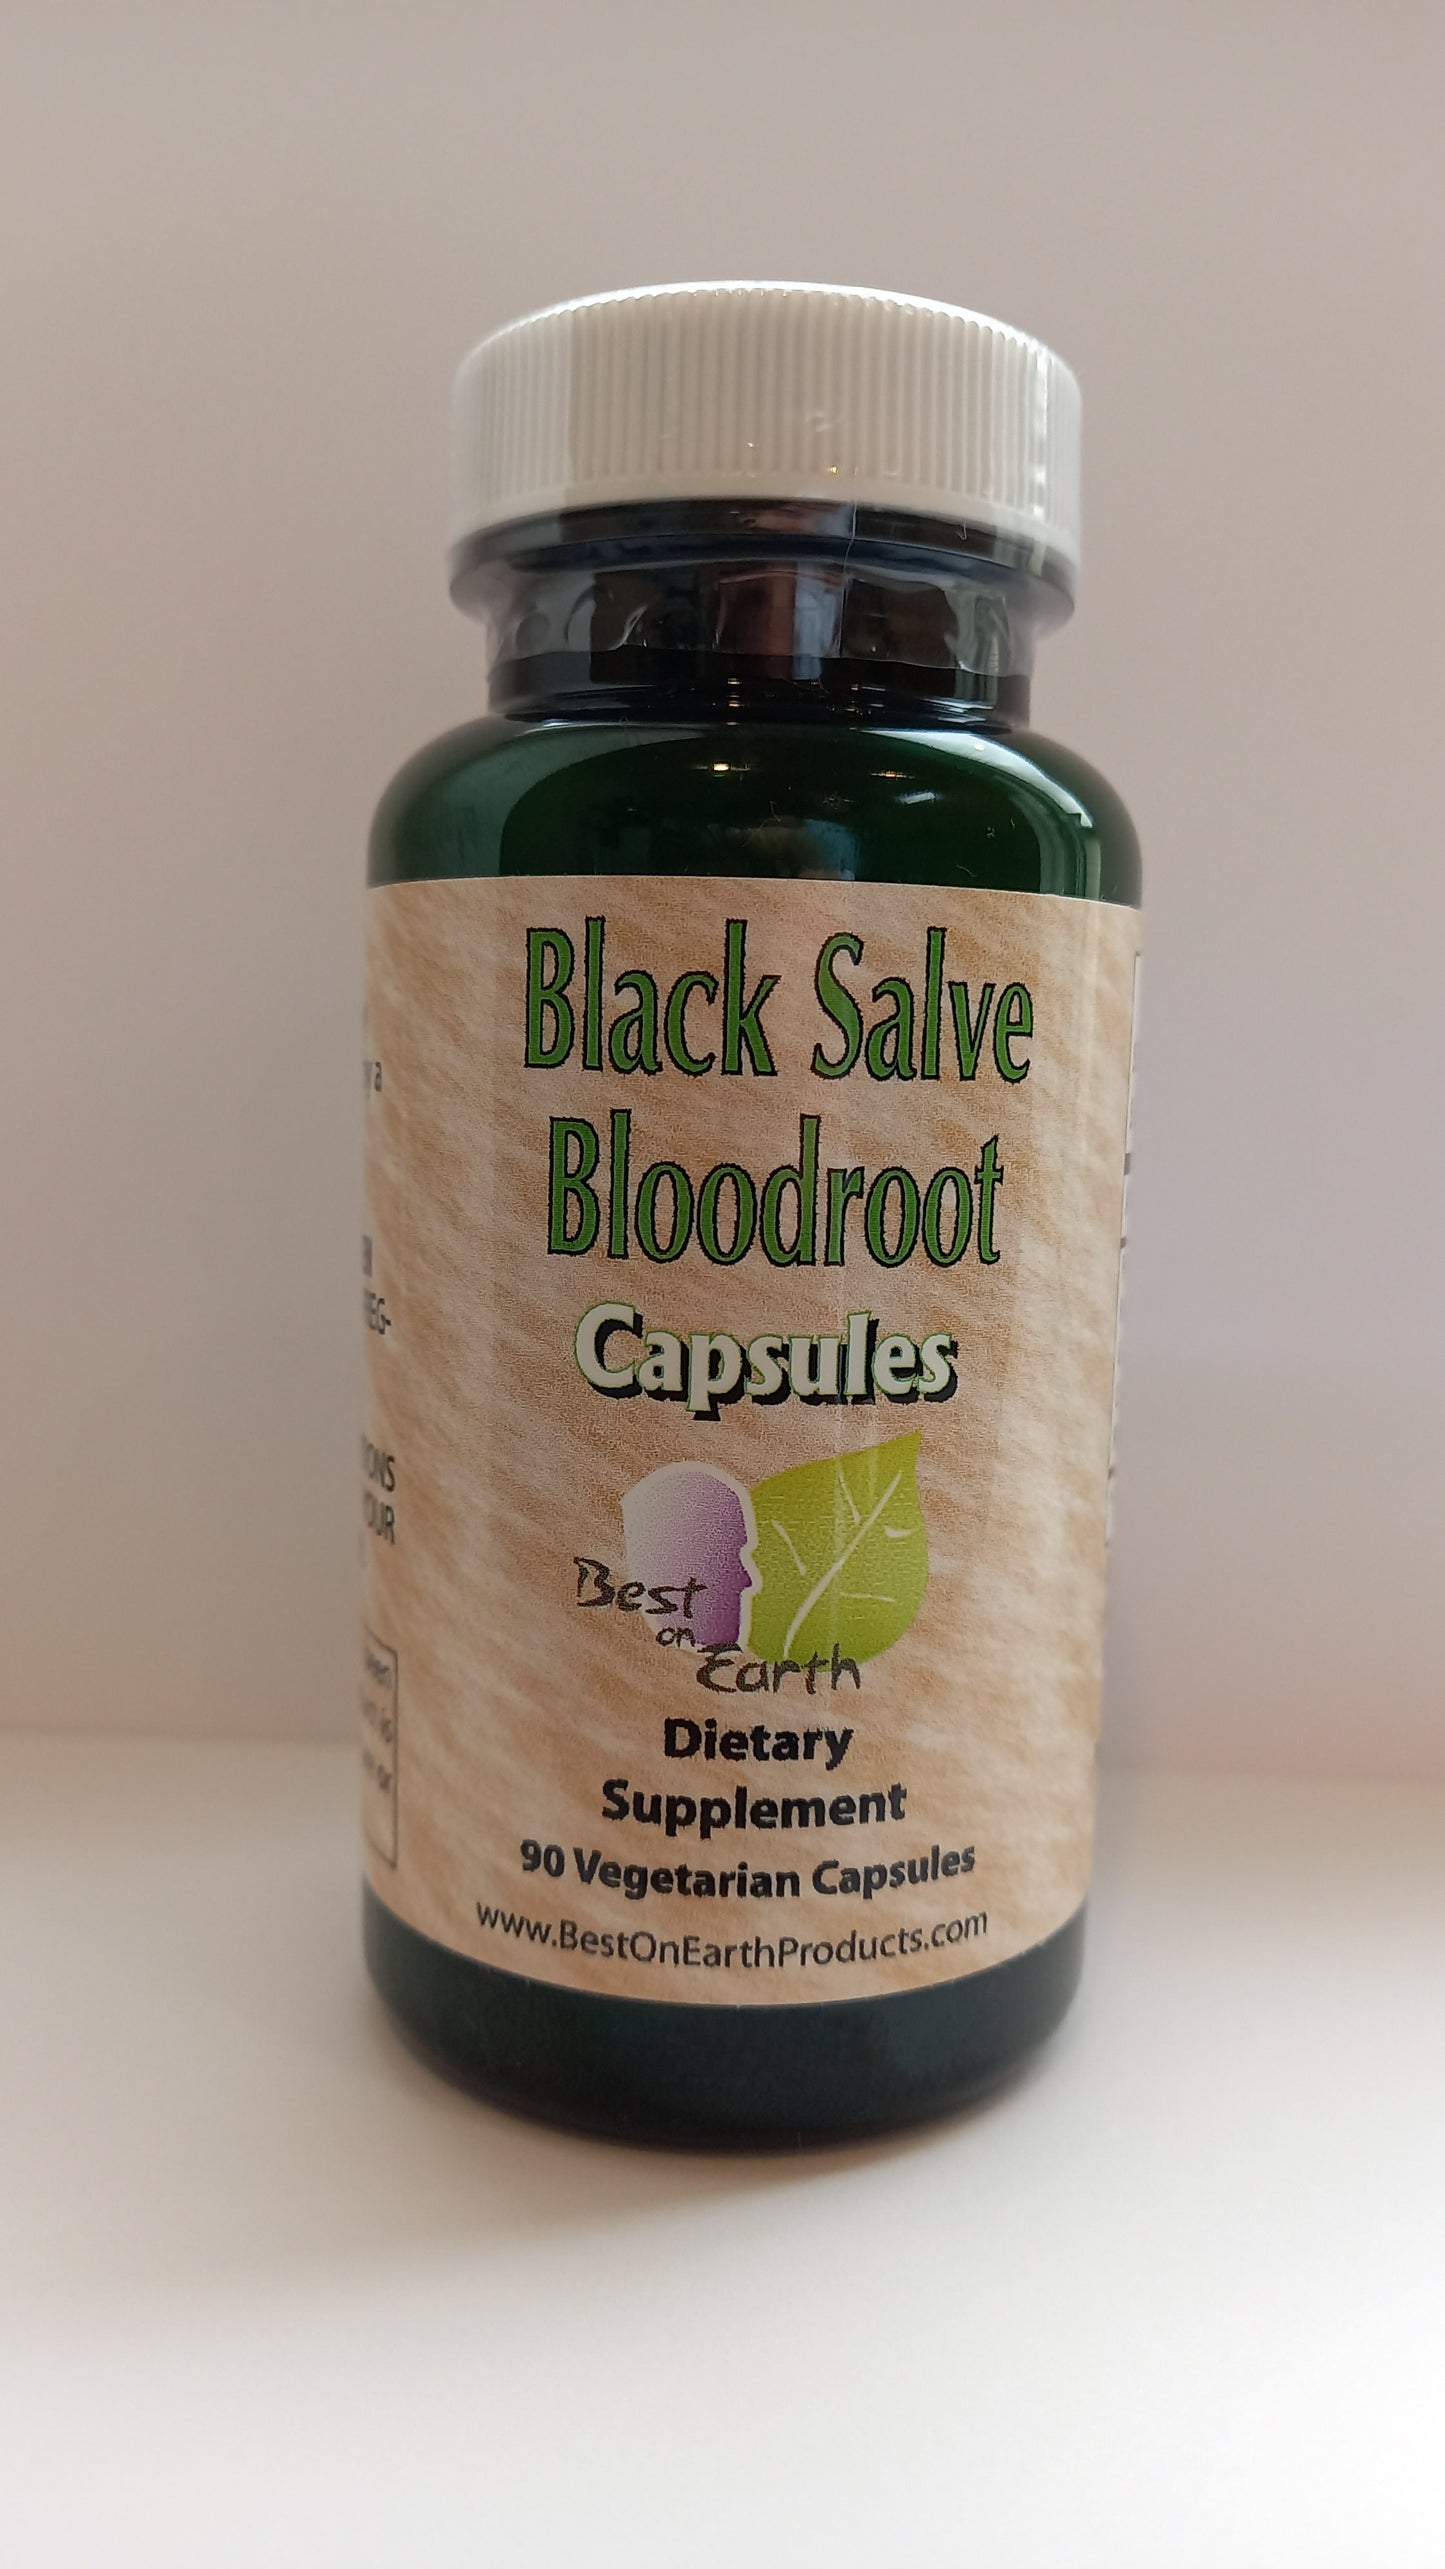 Black Salve Bloodroot Capsules